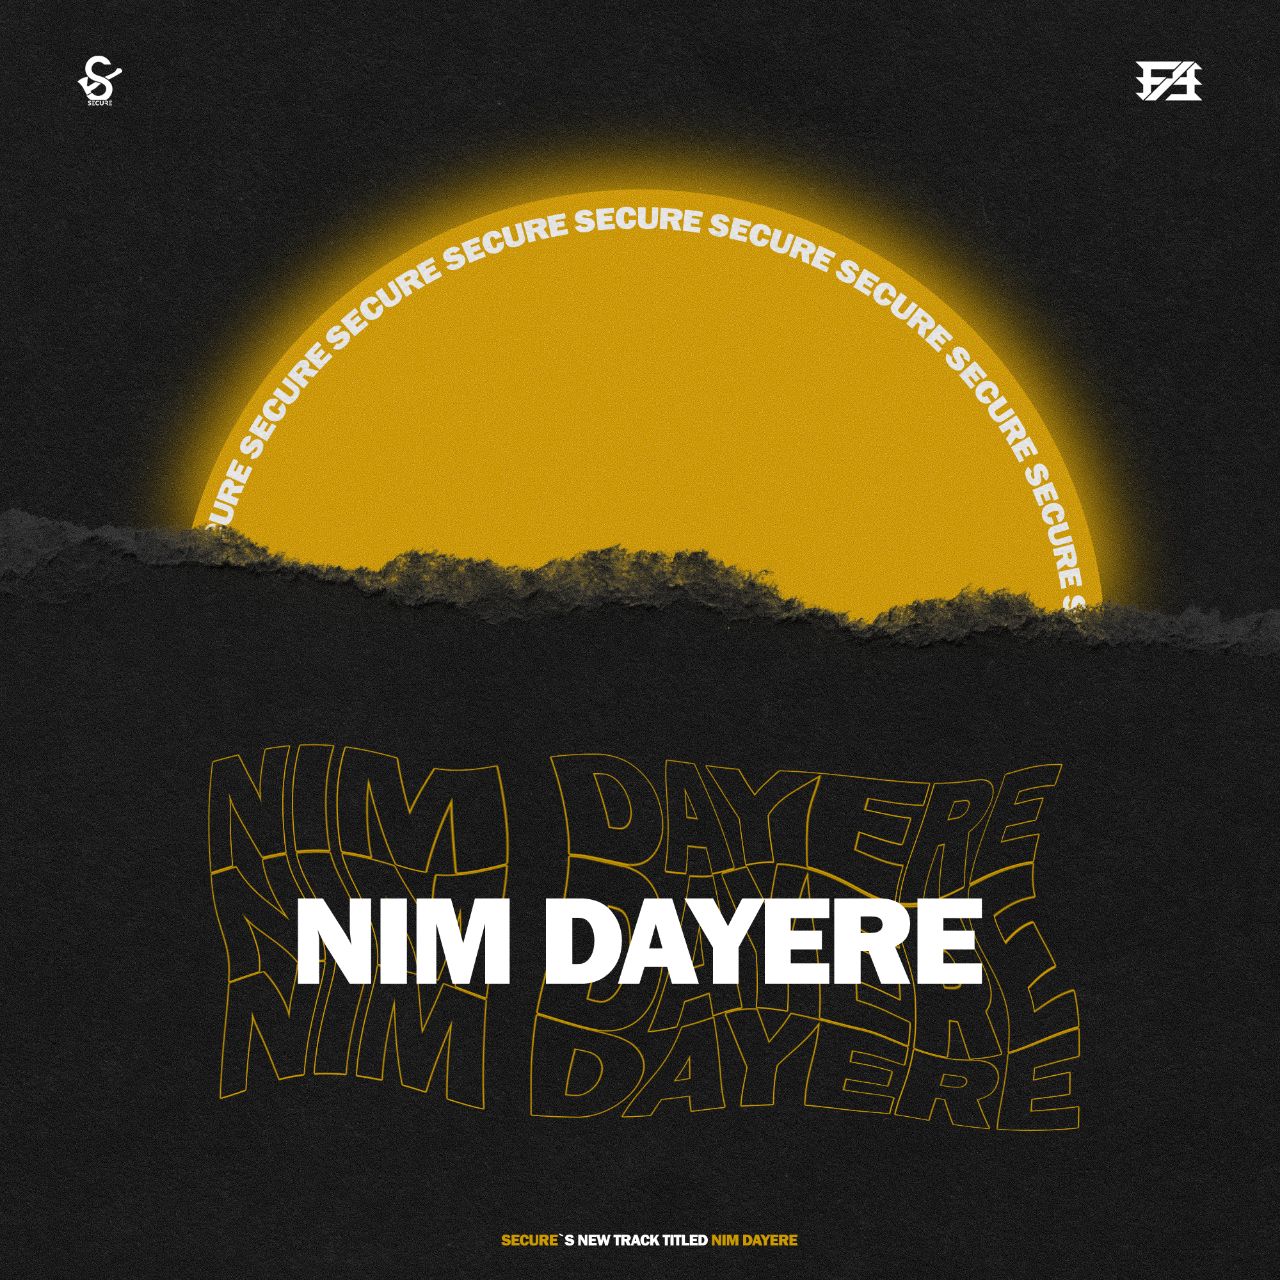  دانلود آهنگ جدید Secure - Nim Dayere | Download New Music By Secure  - Nim Dayere